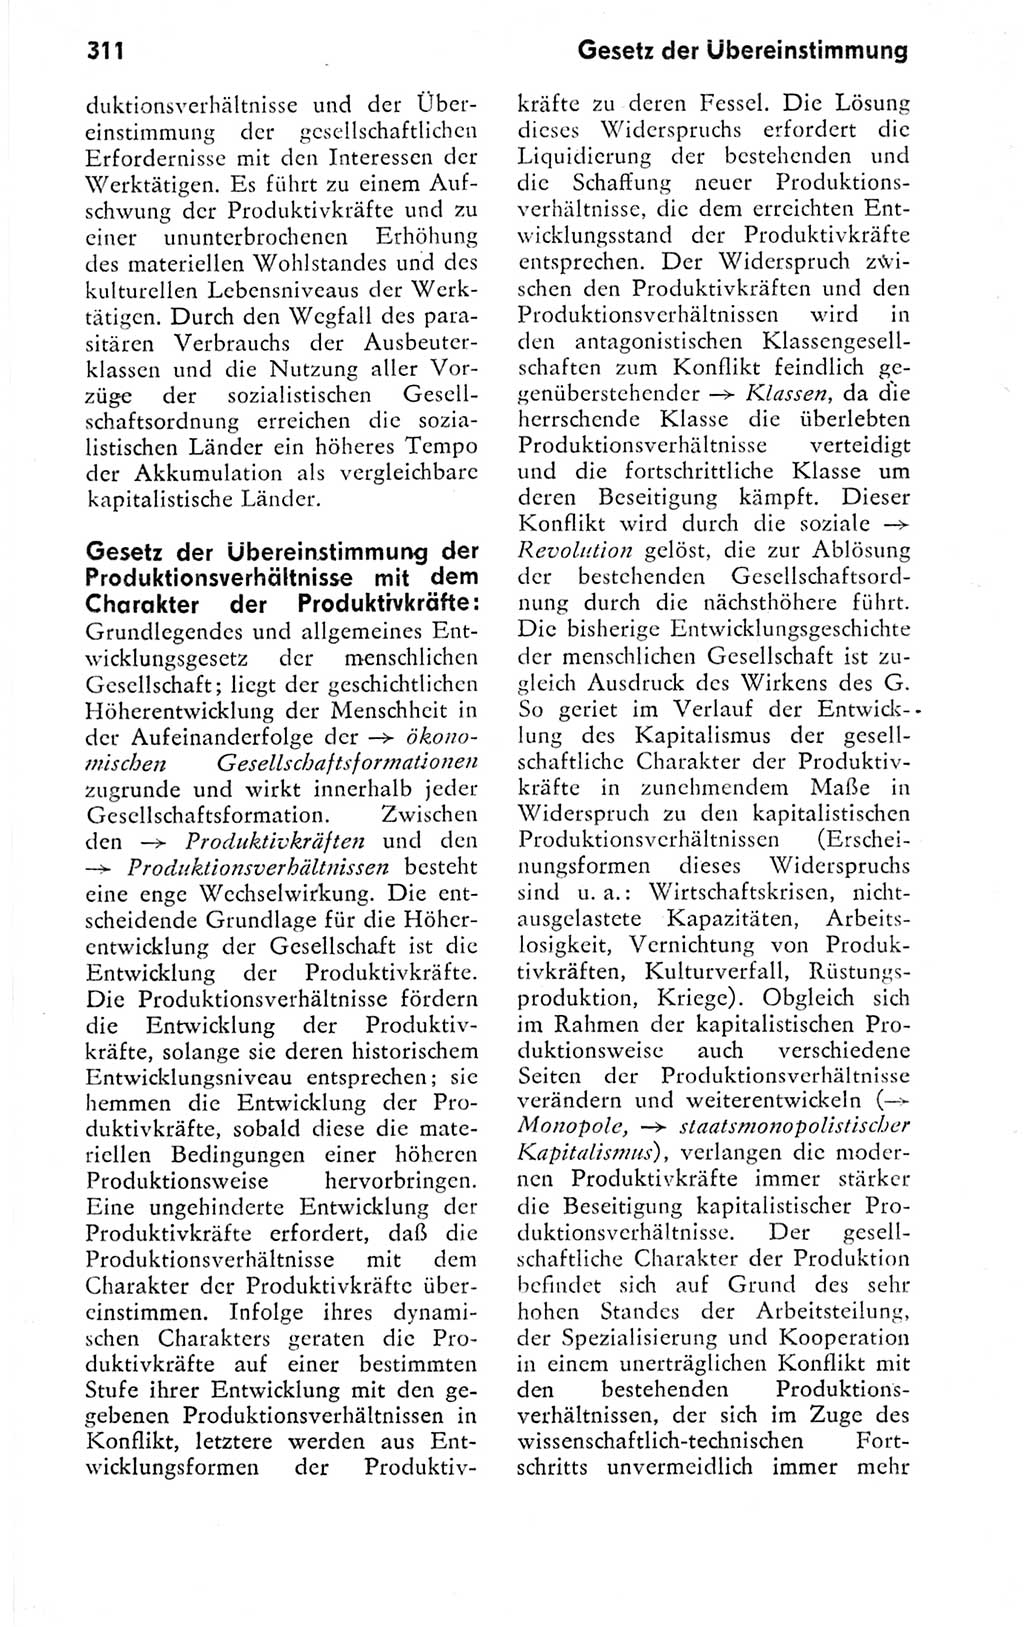 Kleines politisches Wörterbuch [Deutsche Demokratische Republik (DDR)] 1978, Seite 311 (Kl. pol. Wb. DDR 1978, S. 311)